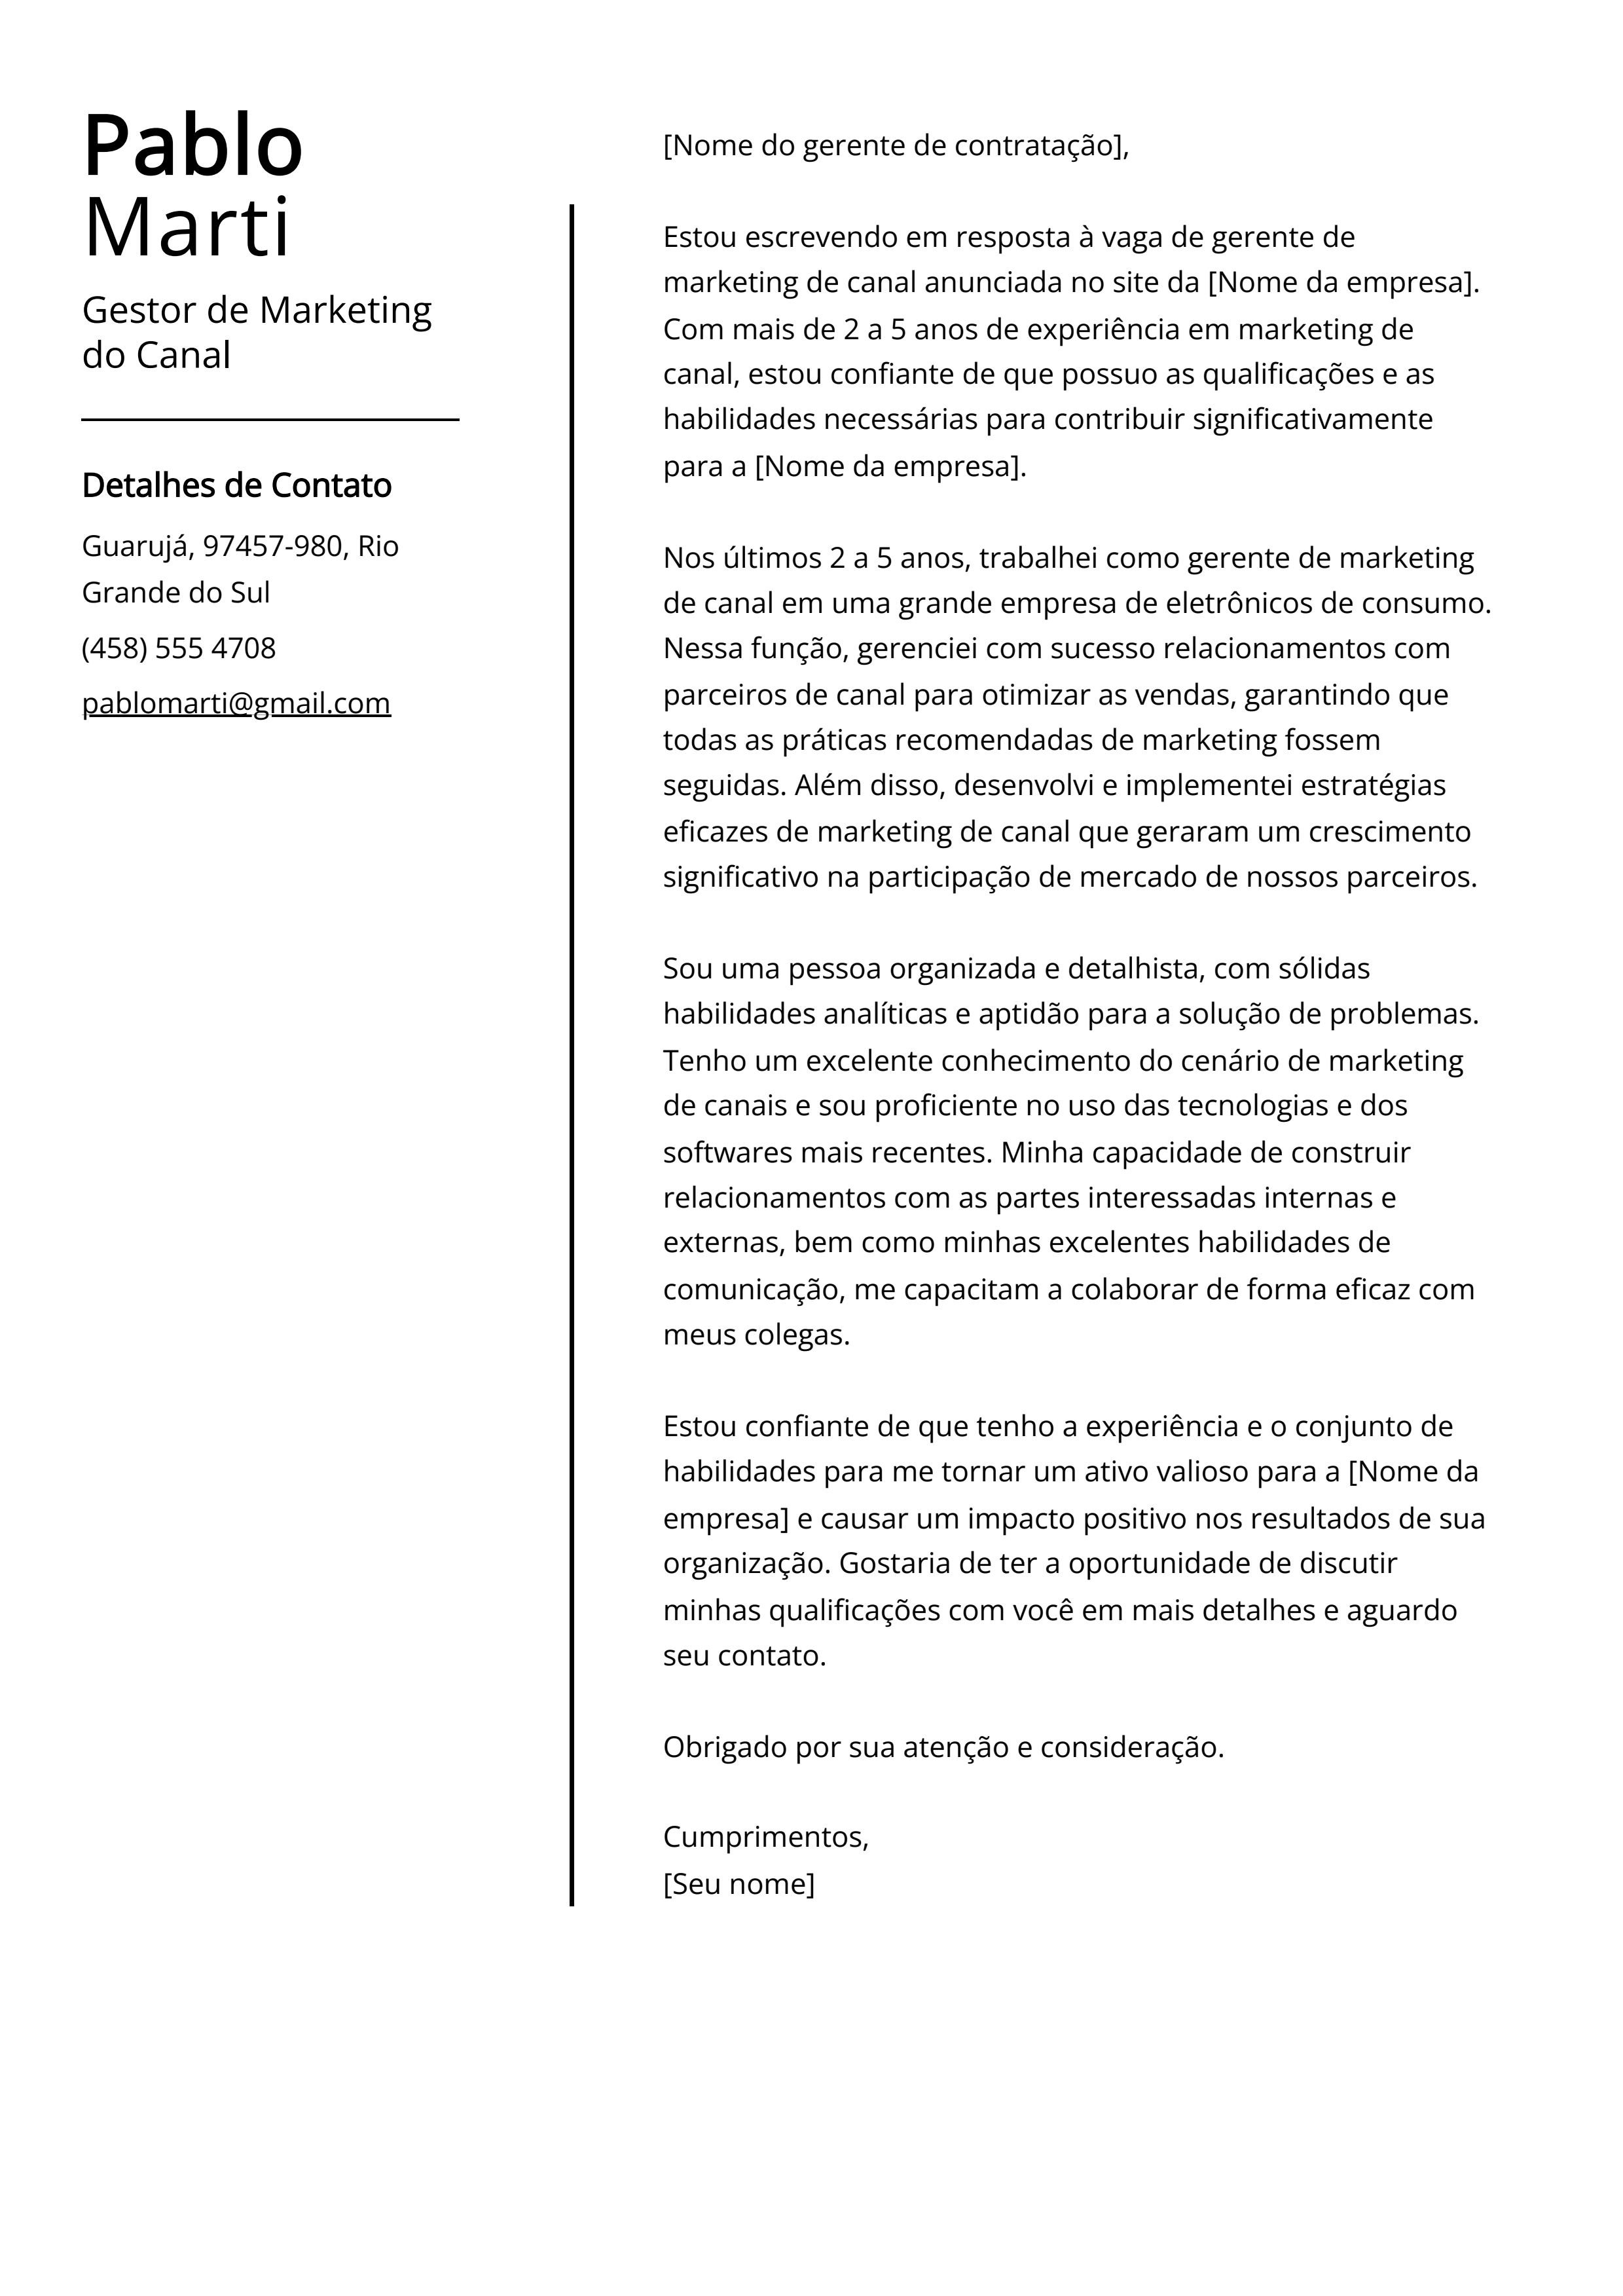 Exemplo de carta de apresentação do Gestor de Marketing do Canal